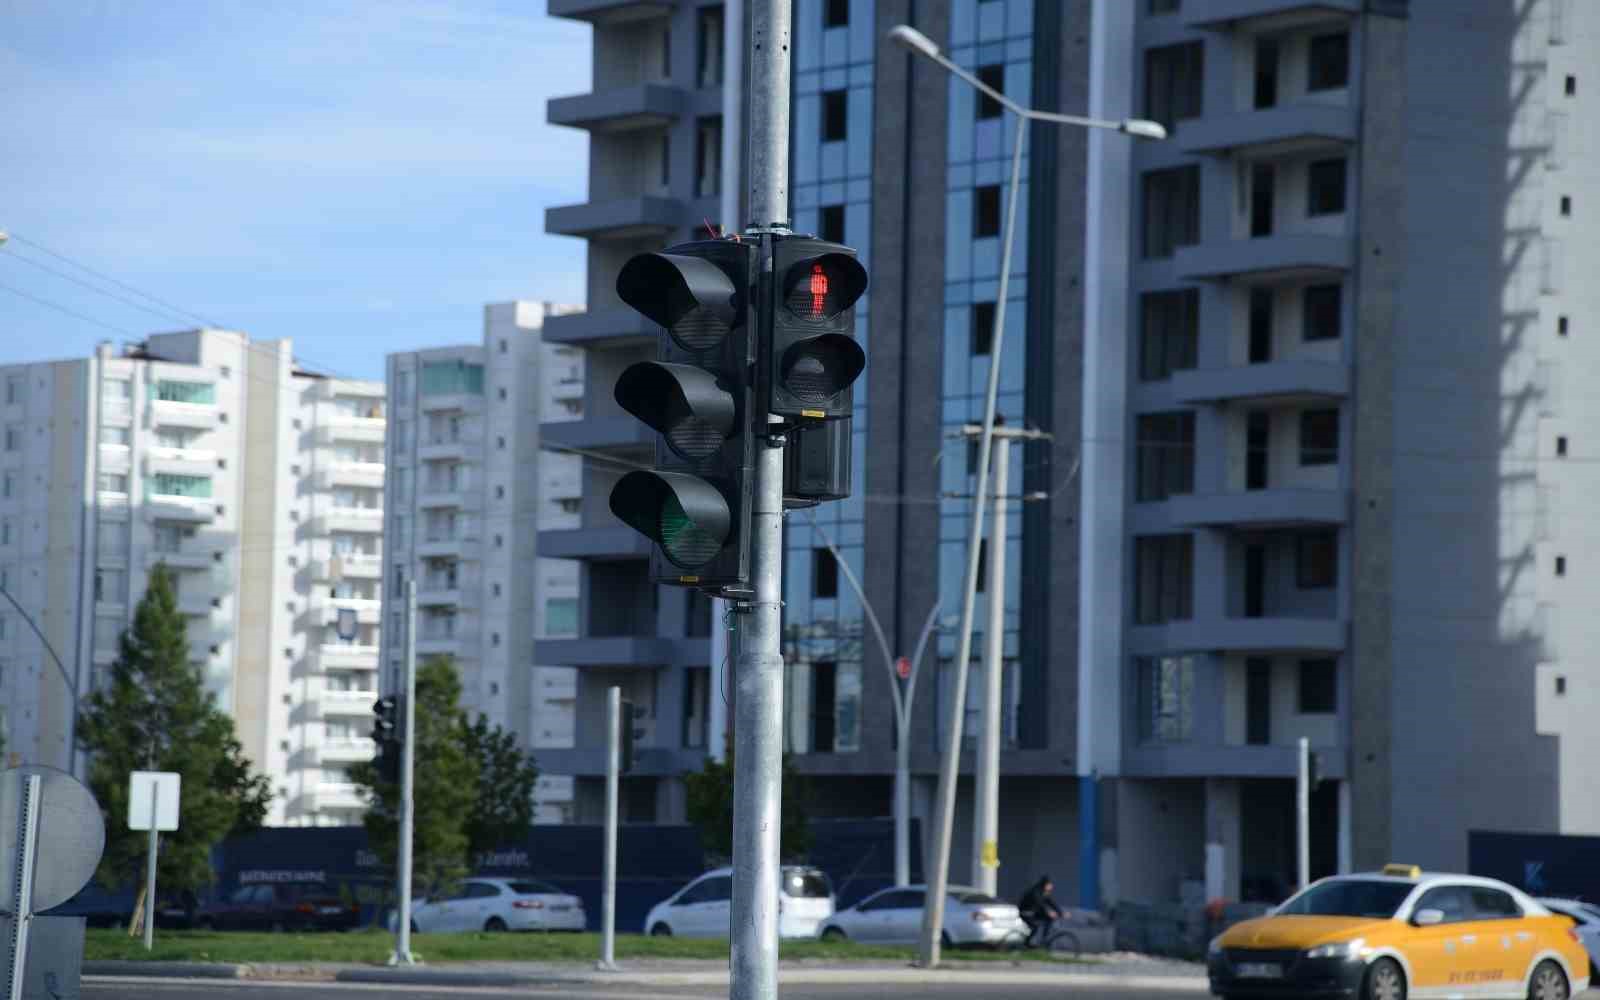 Büyükşehir Belediyesi, yol ve yaya güvenliği için sinyalizasyon sistemlerini artırıyor
